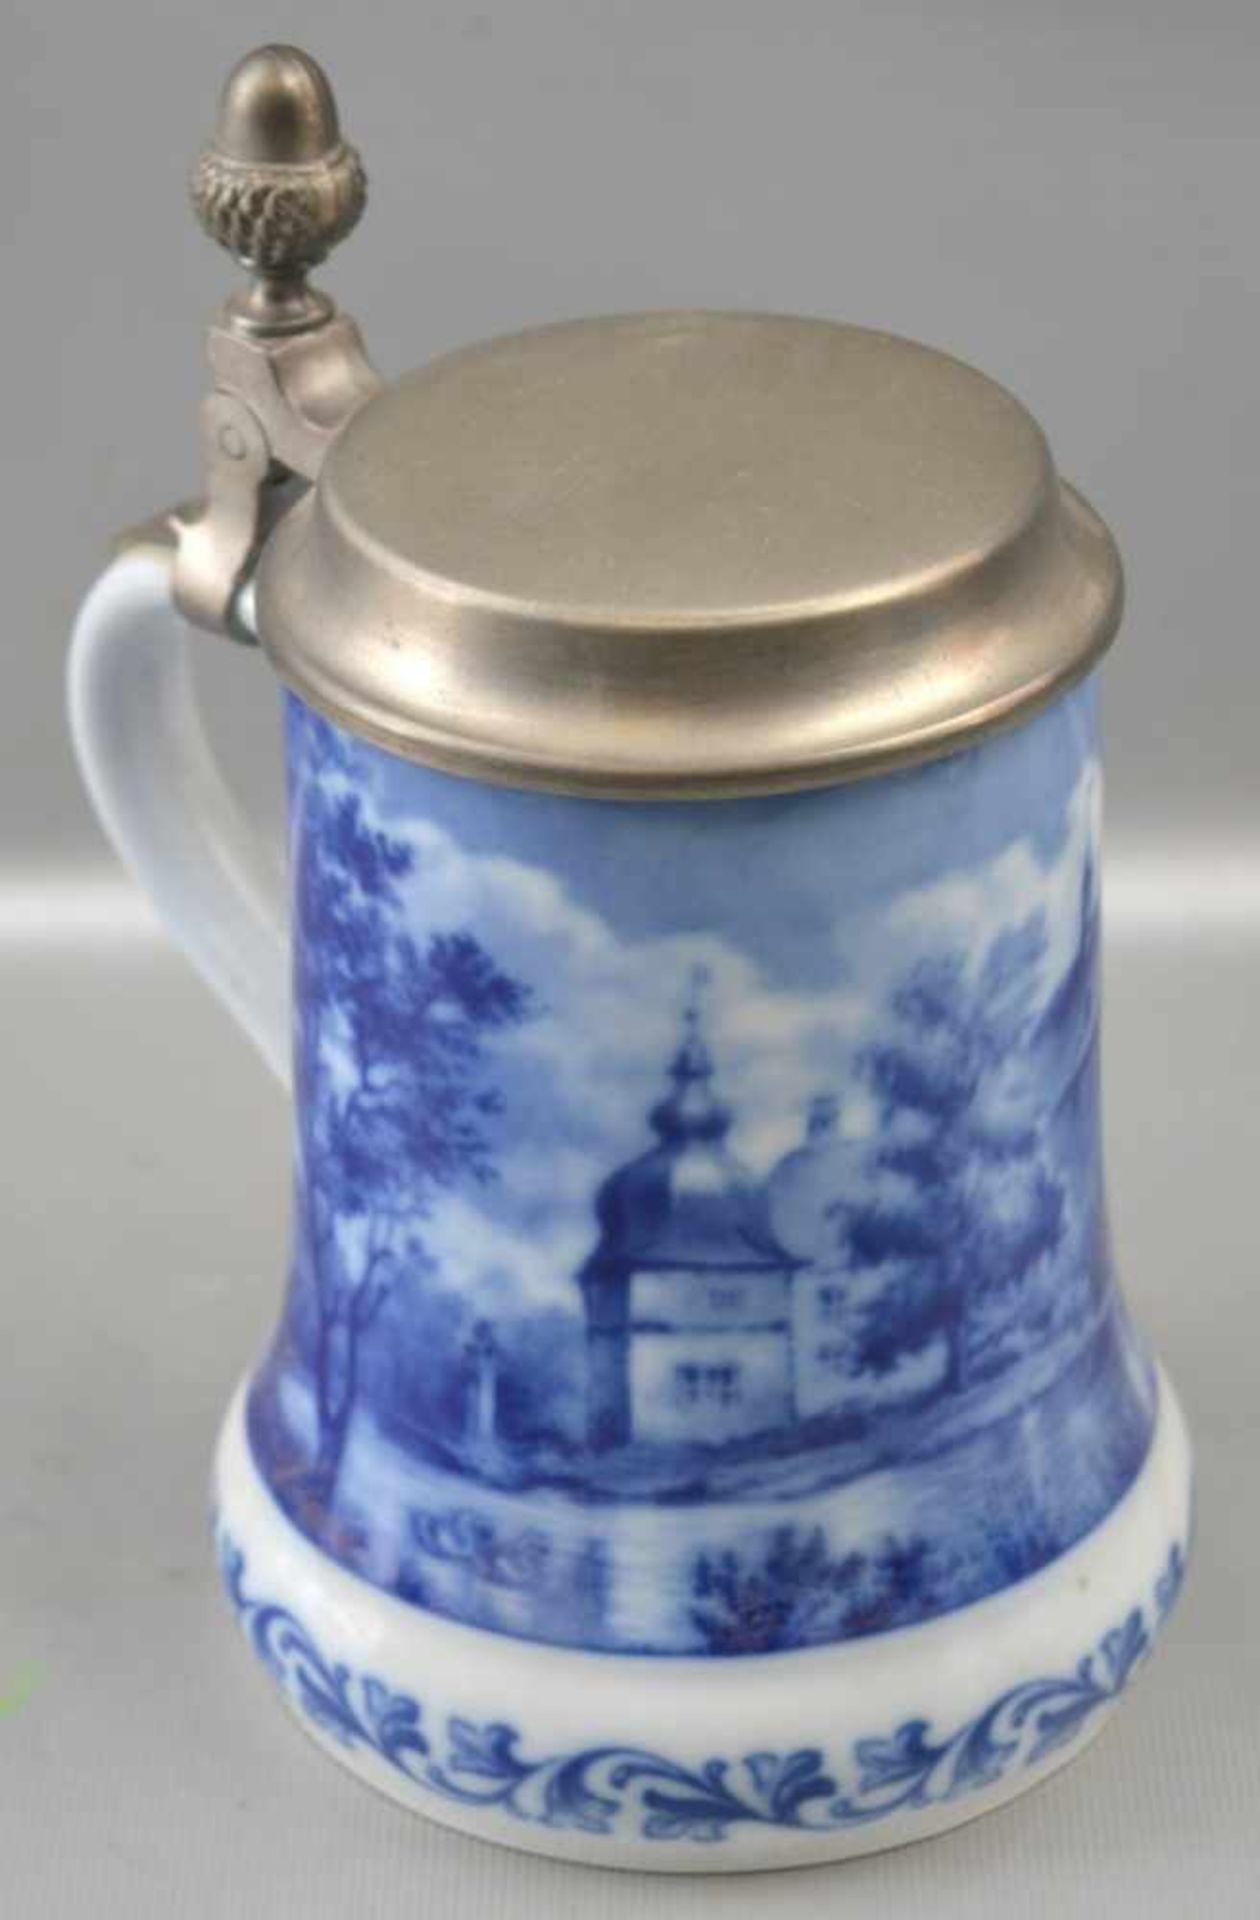 Bierkrug Porzellan, Wandung mit Wasserschloss Lembeck in Westfalen weiß/blau verziert, H 18 cm